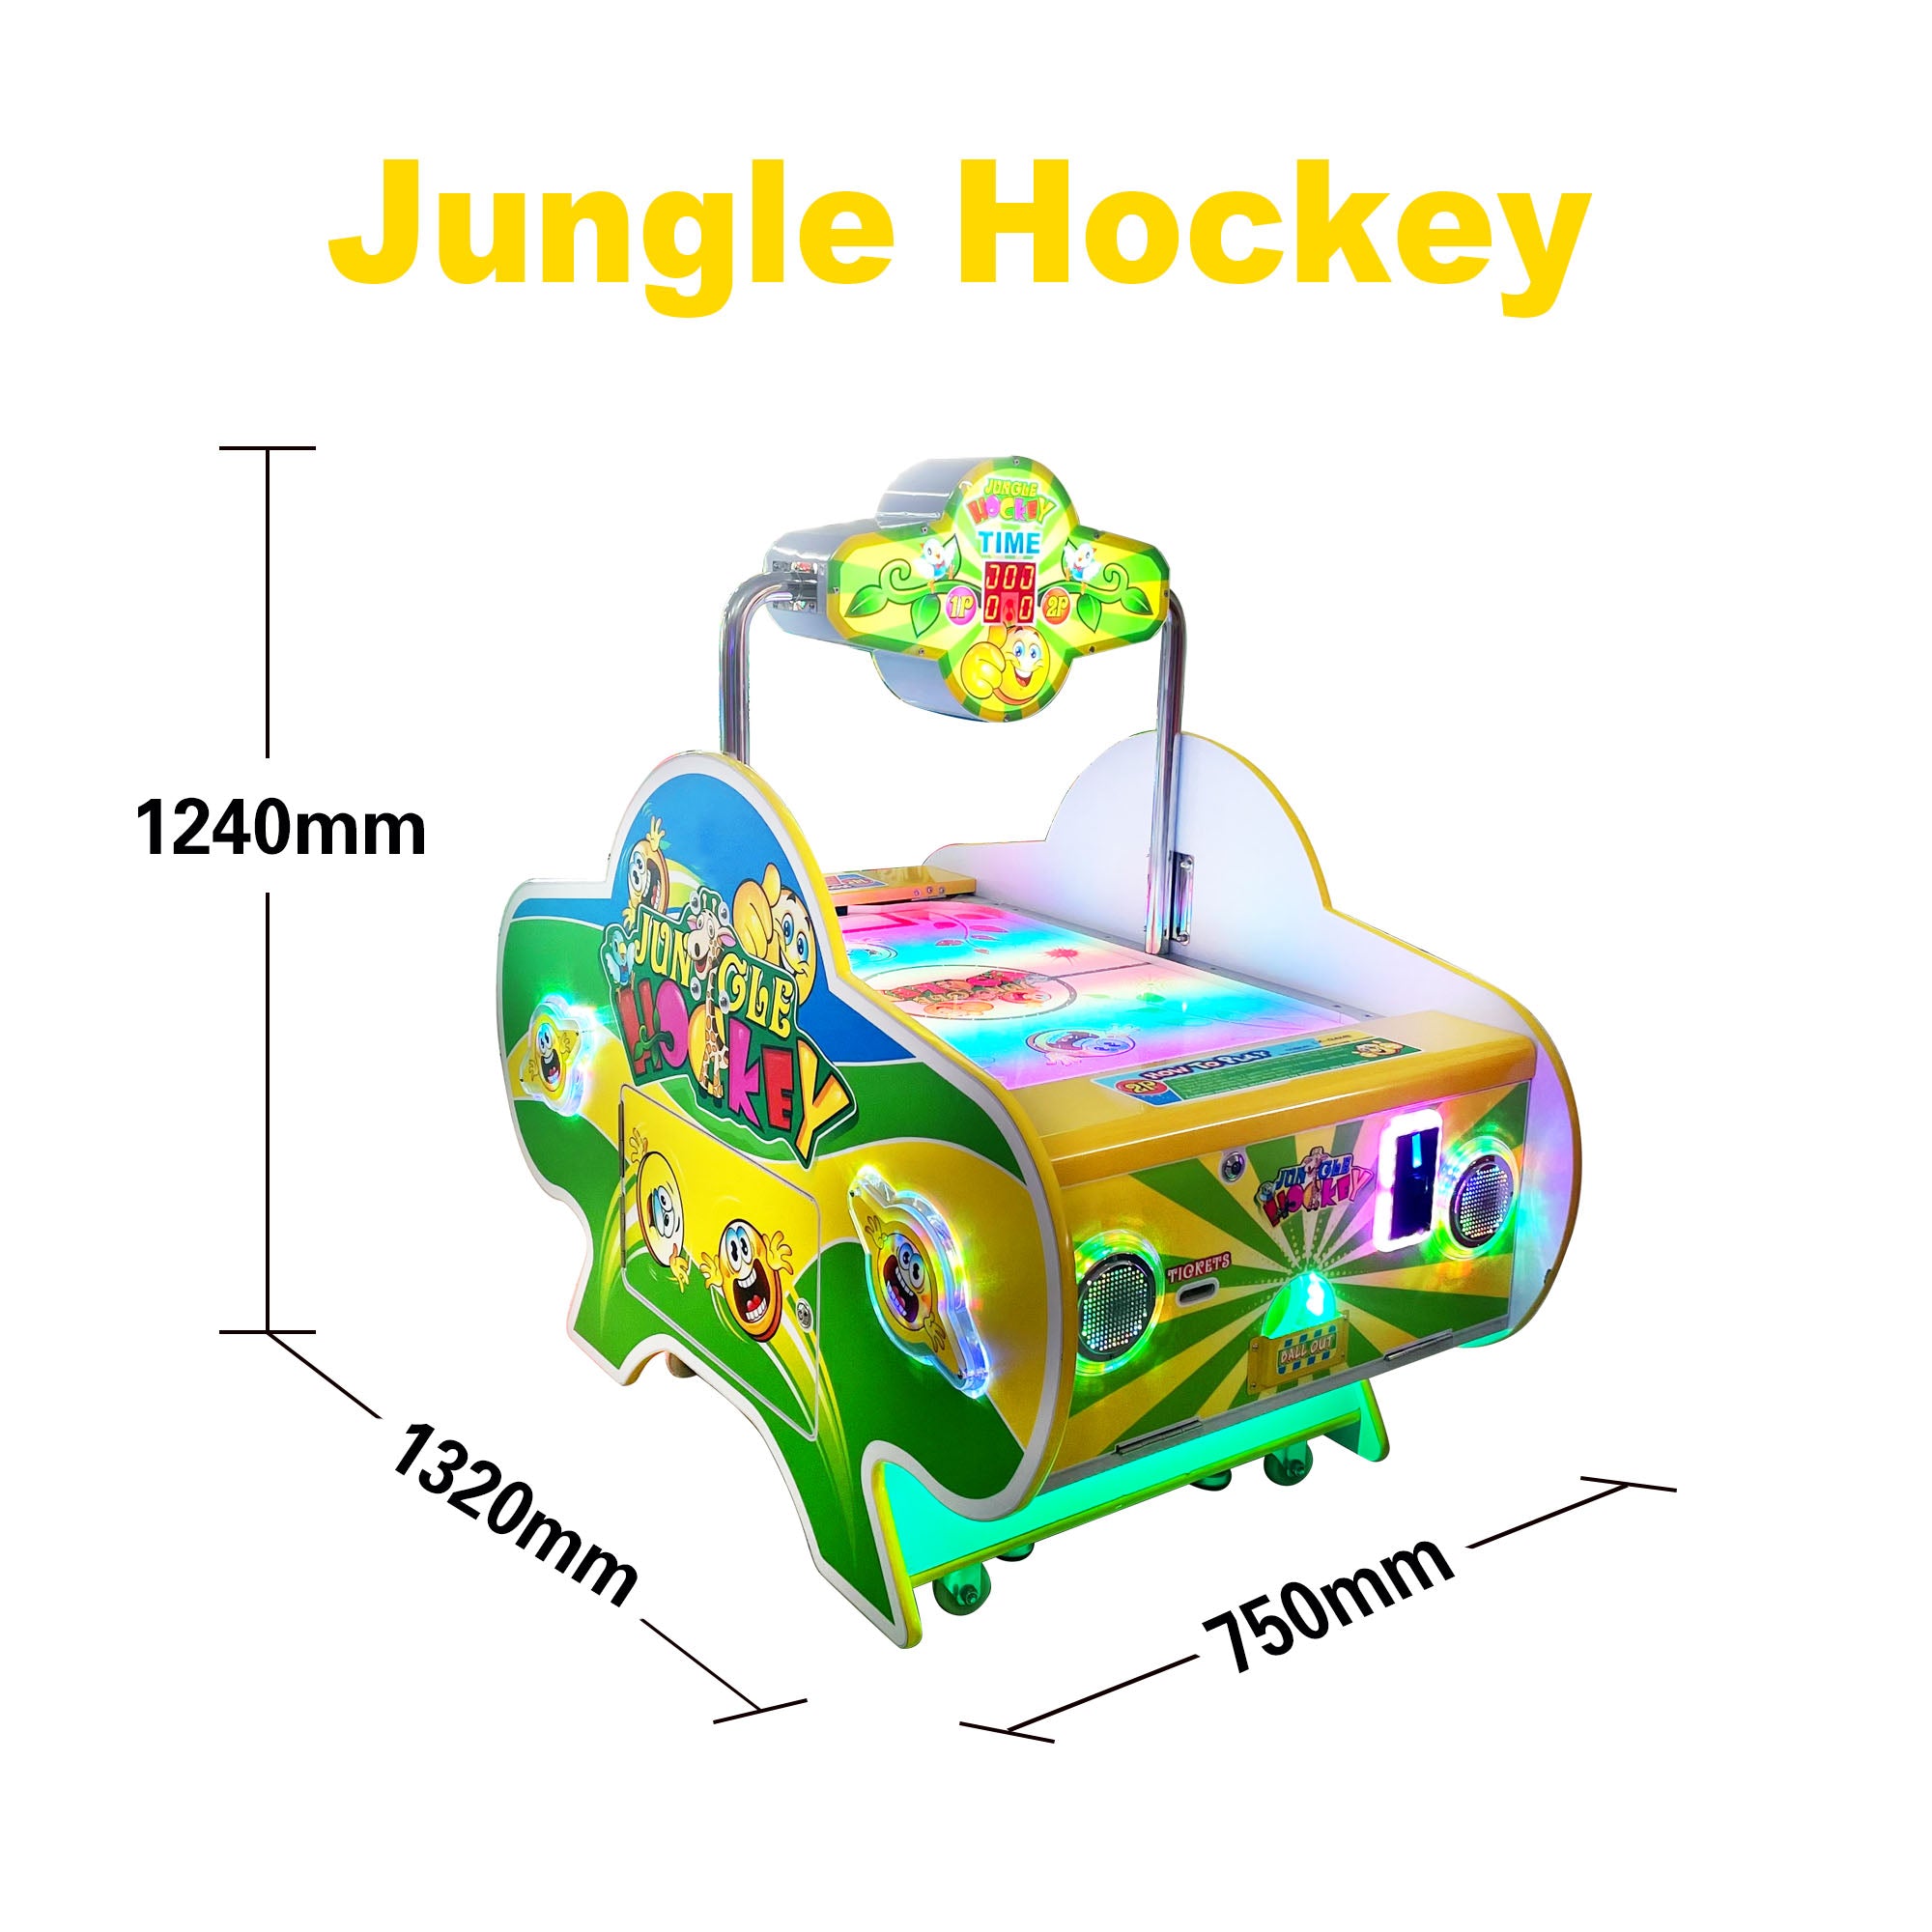 Jungle Hockey